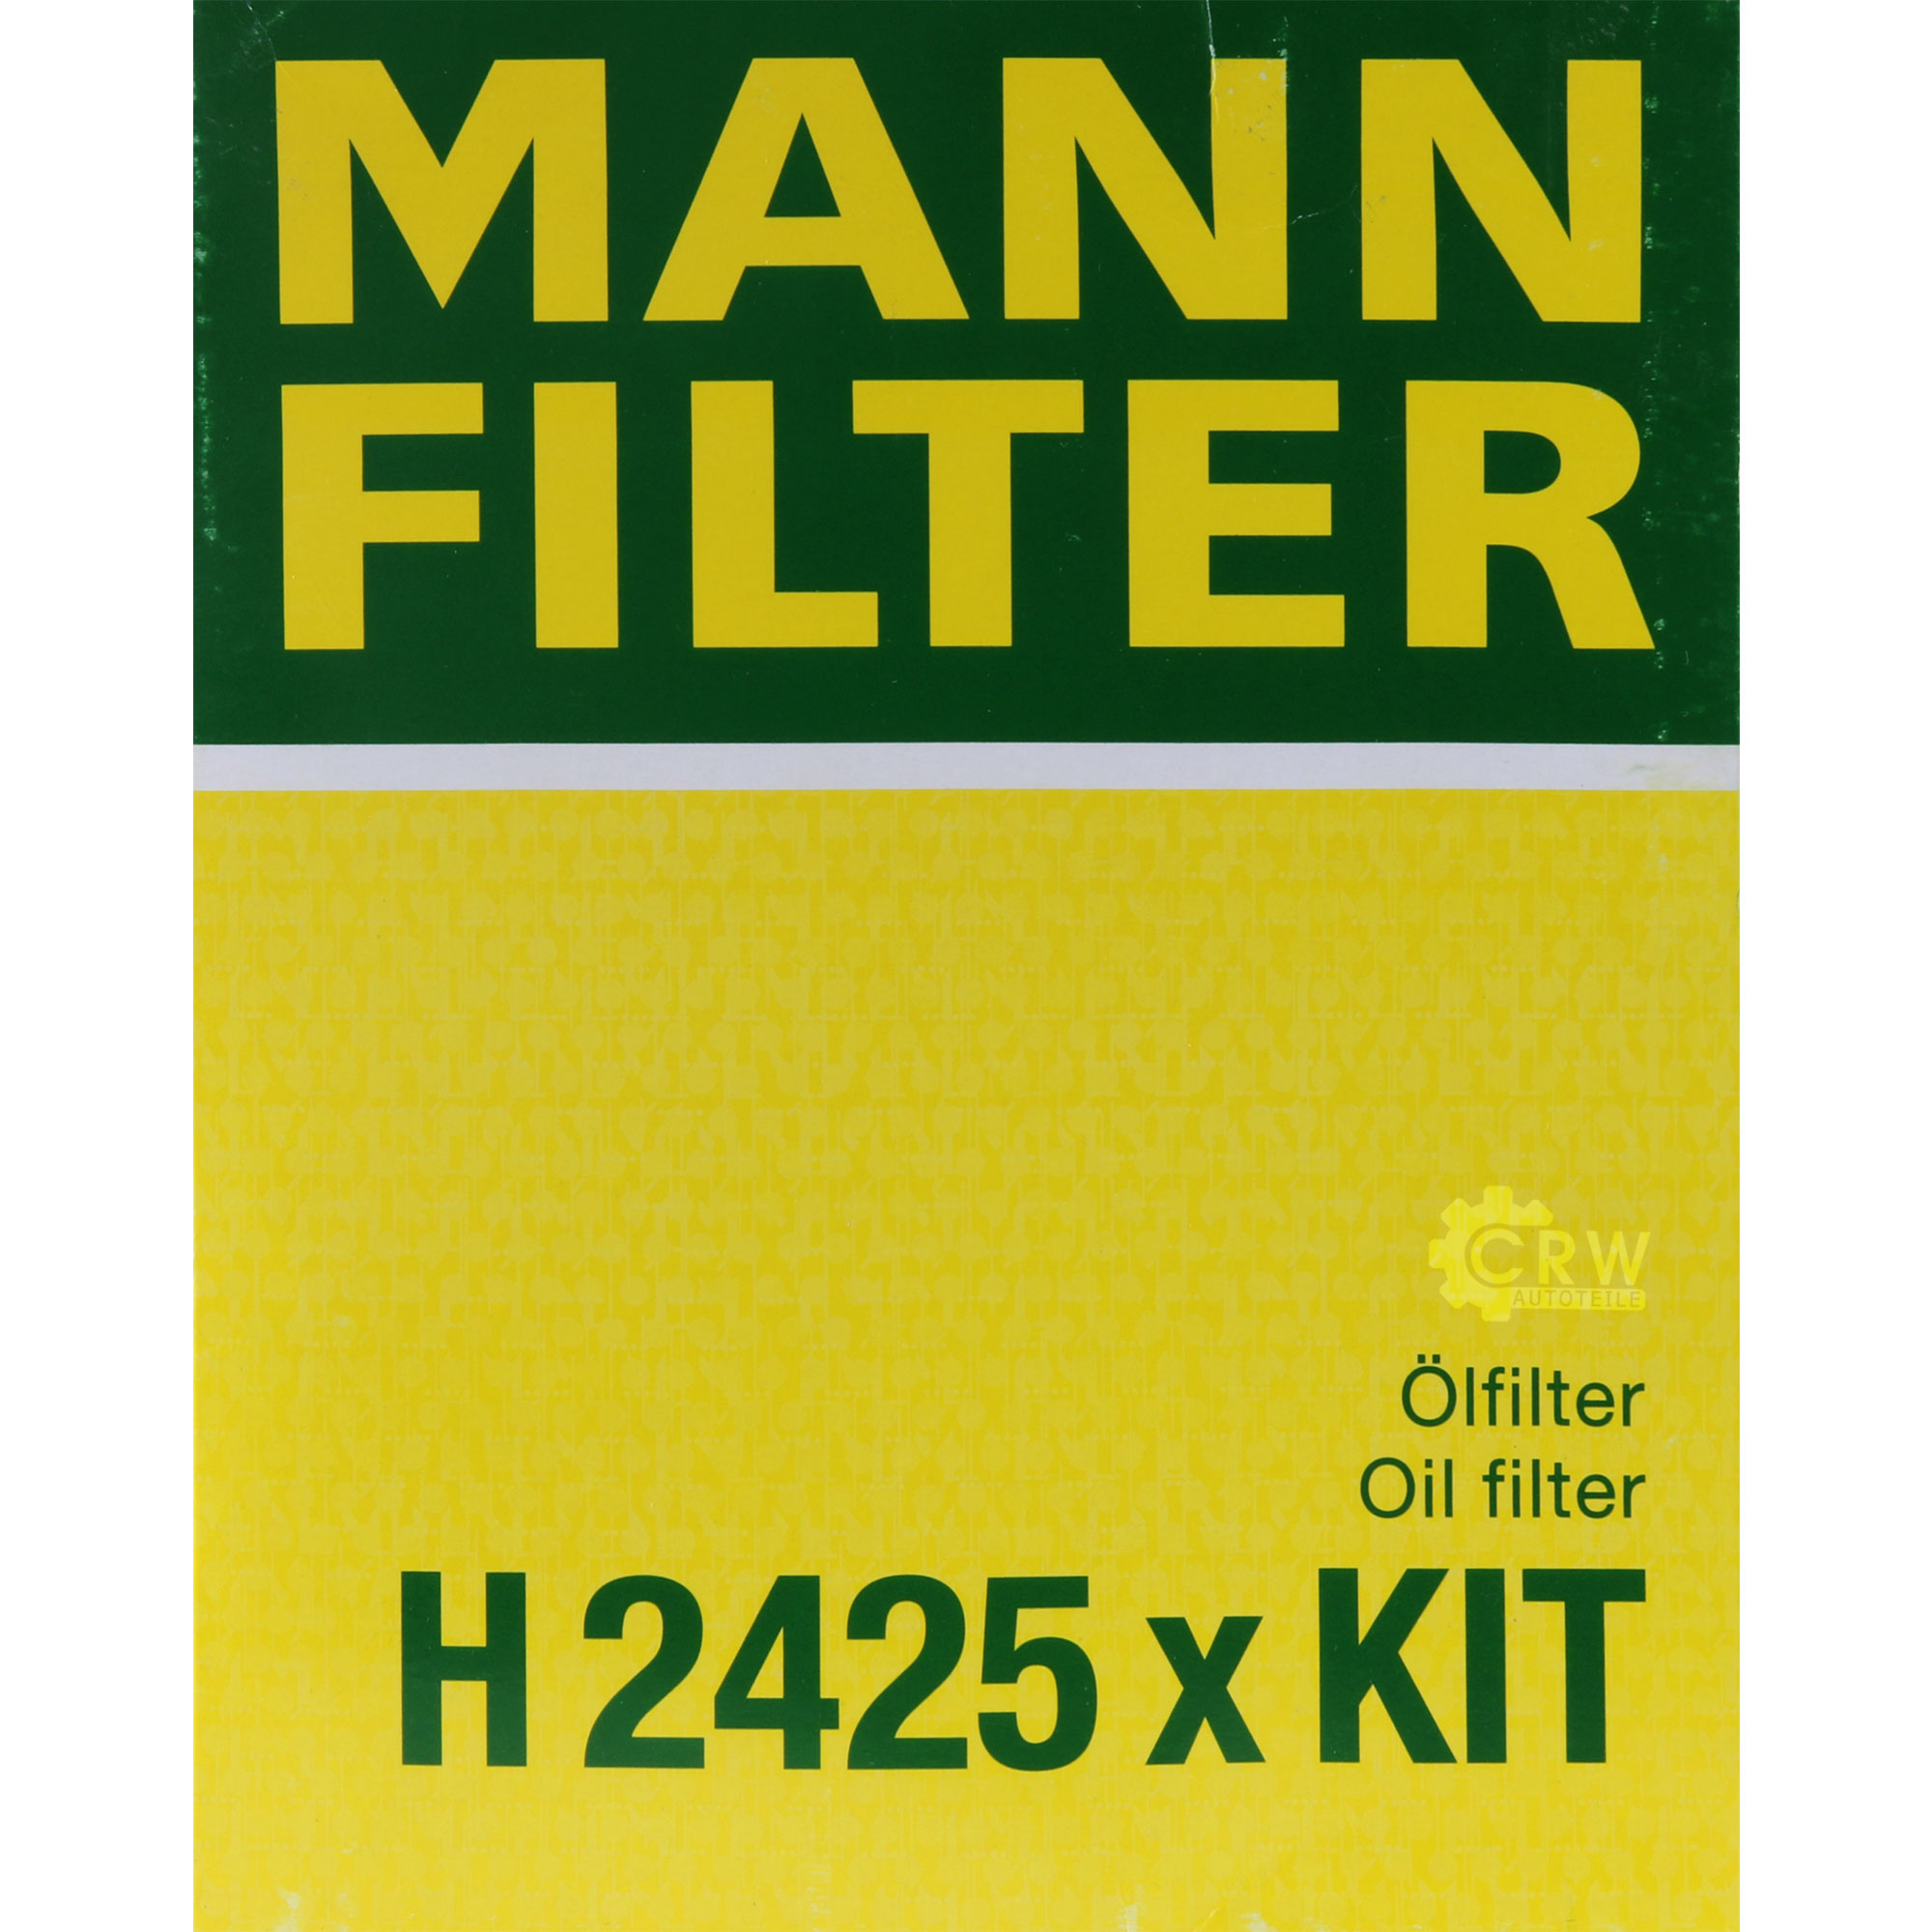 MANN-FILTER Getriebeölfilter für Automatikgetriebe H 2425 x KIT